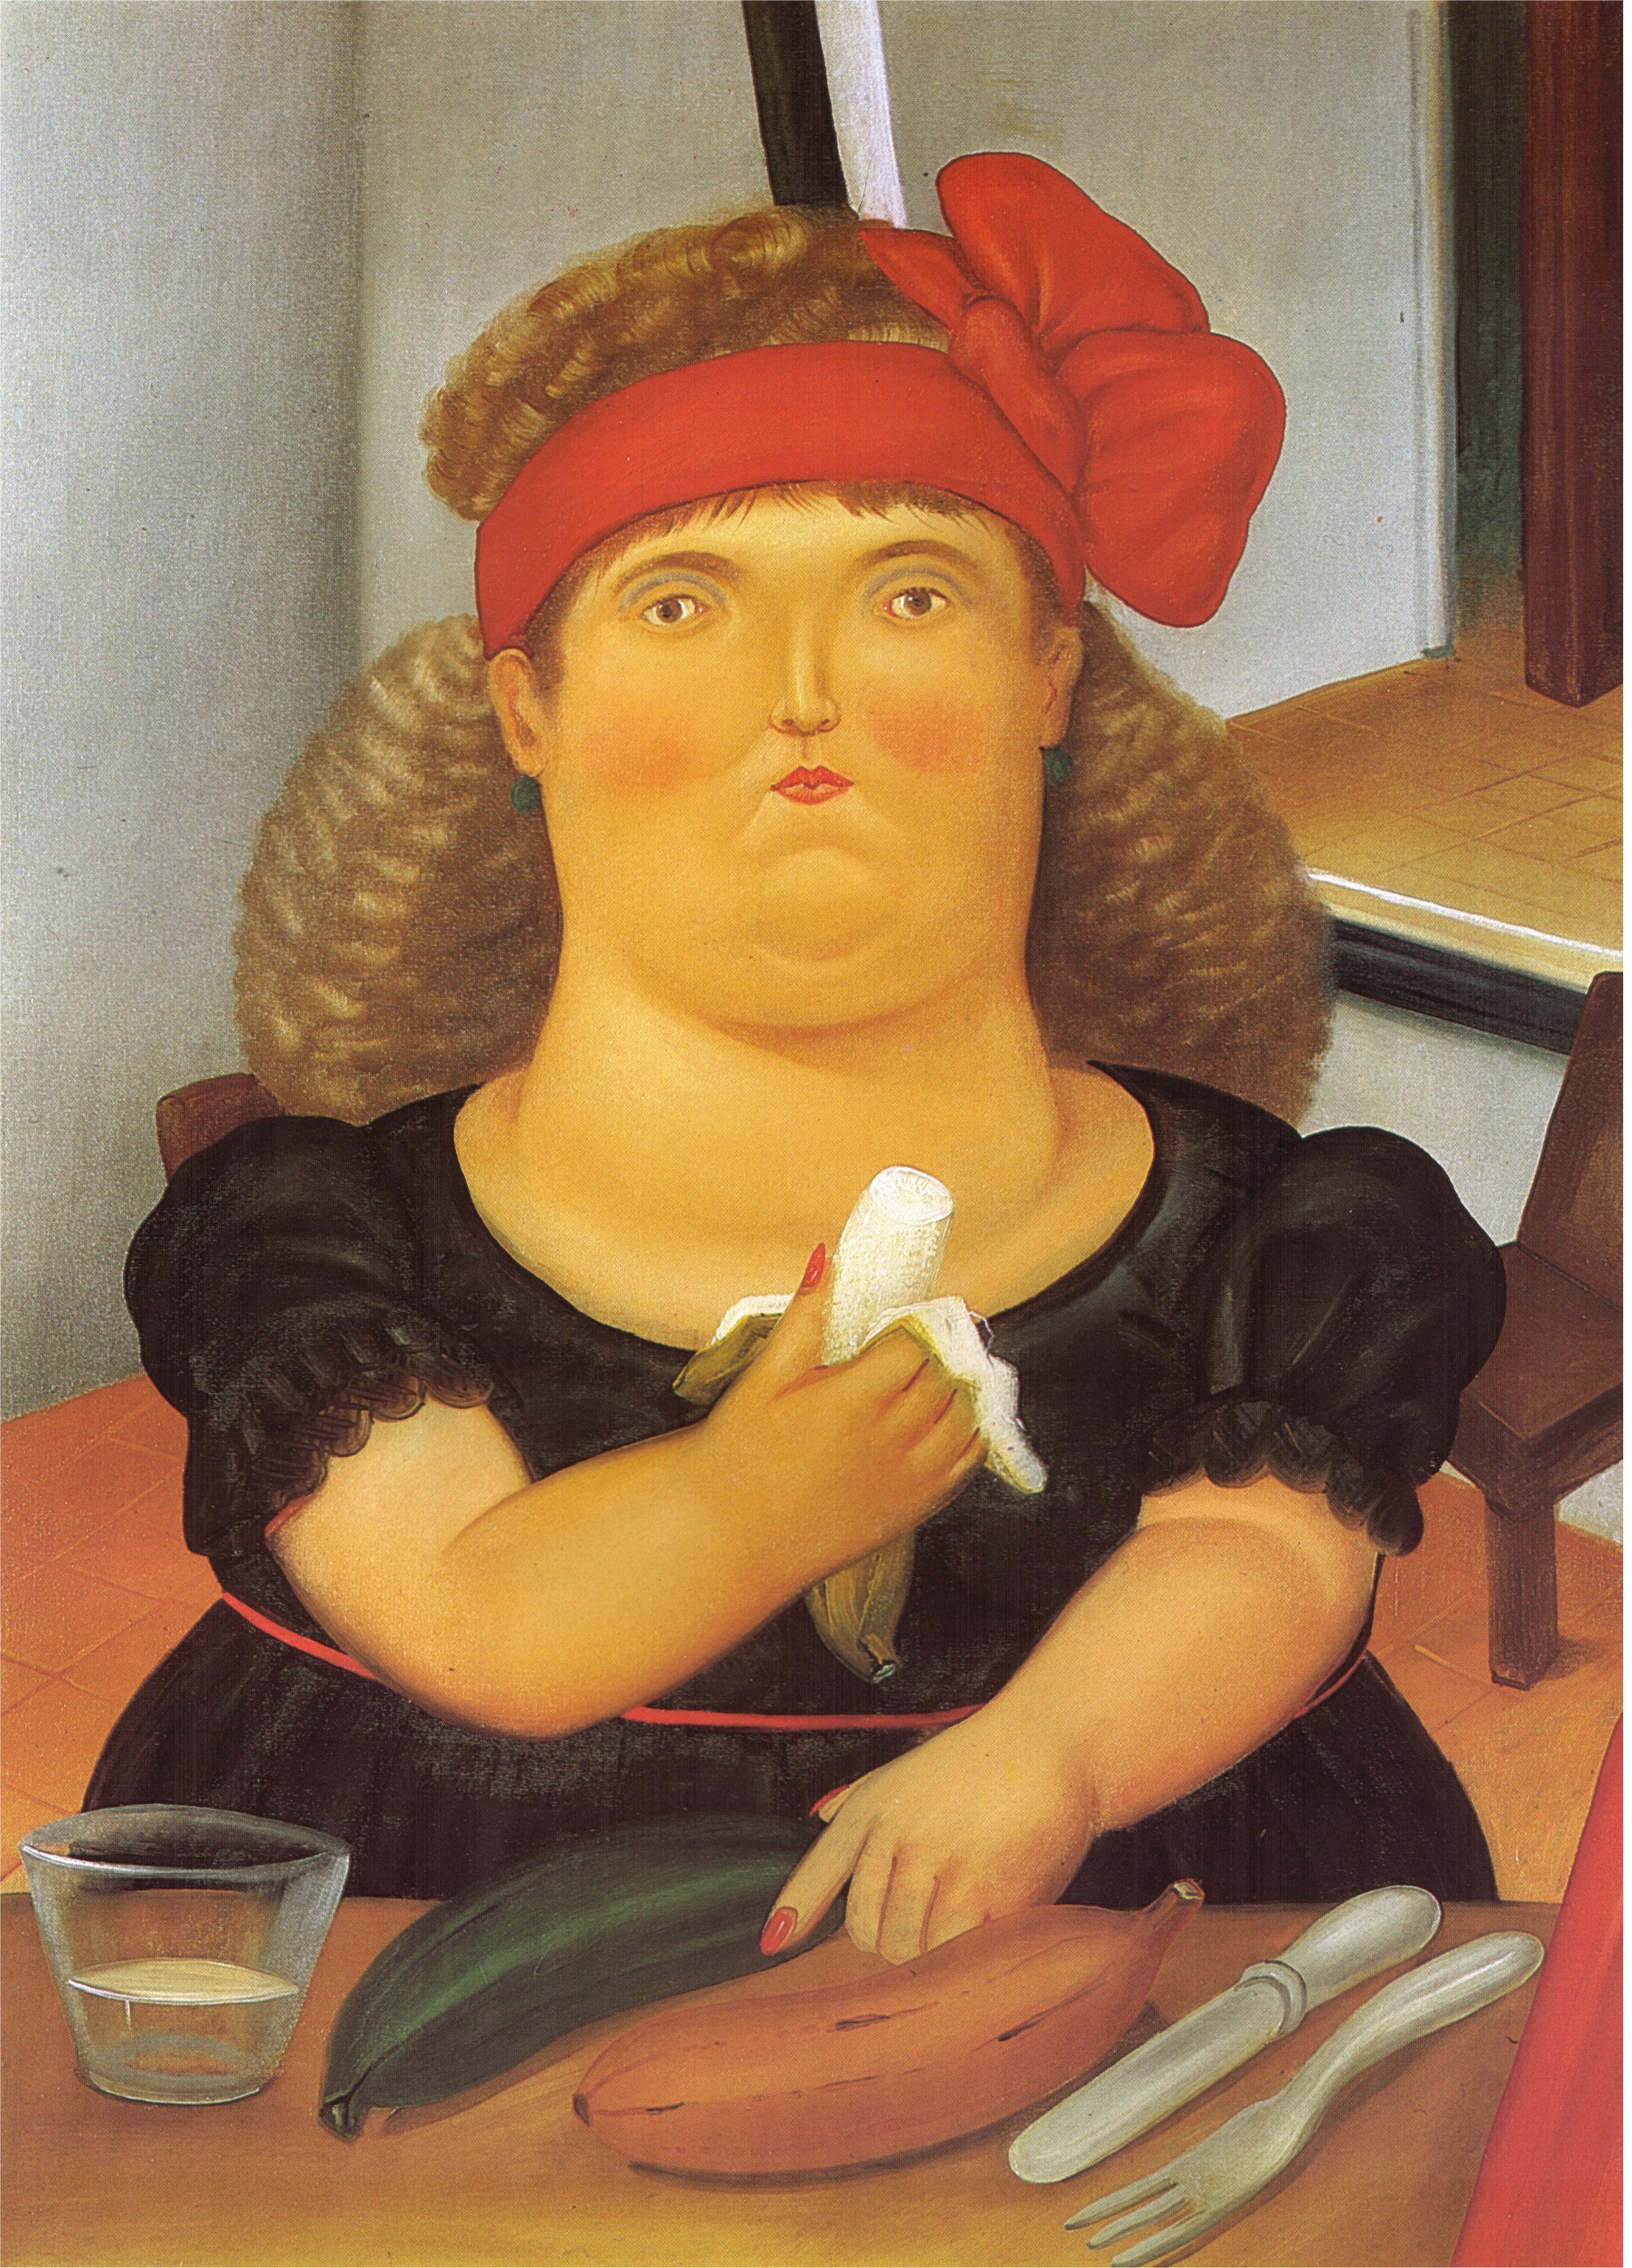 Woman Eating a Bannana (1982).